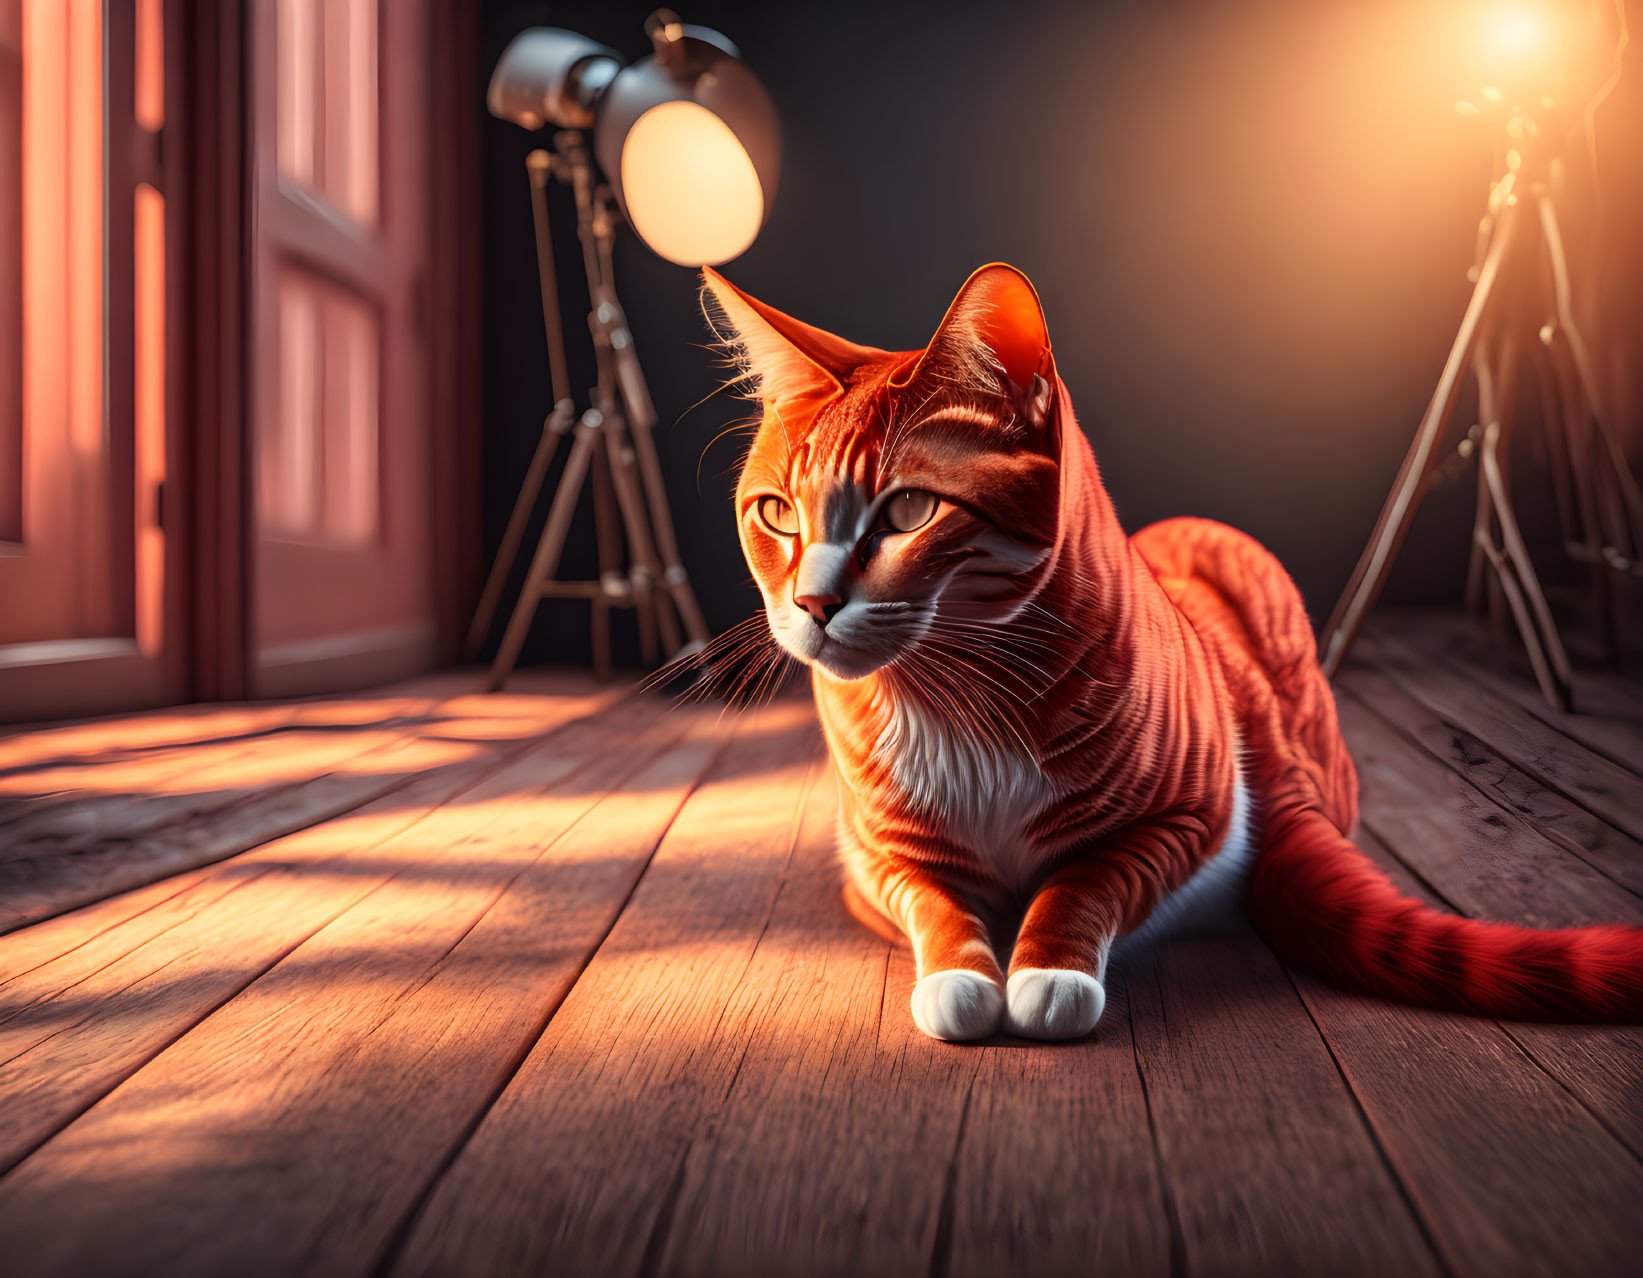 Orange Tabby Cat on Wooden Floor with Studio Lights and Open Door